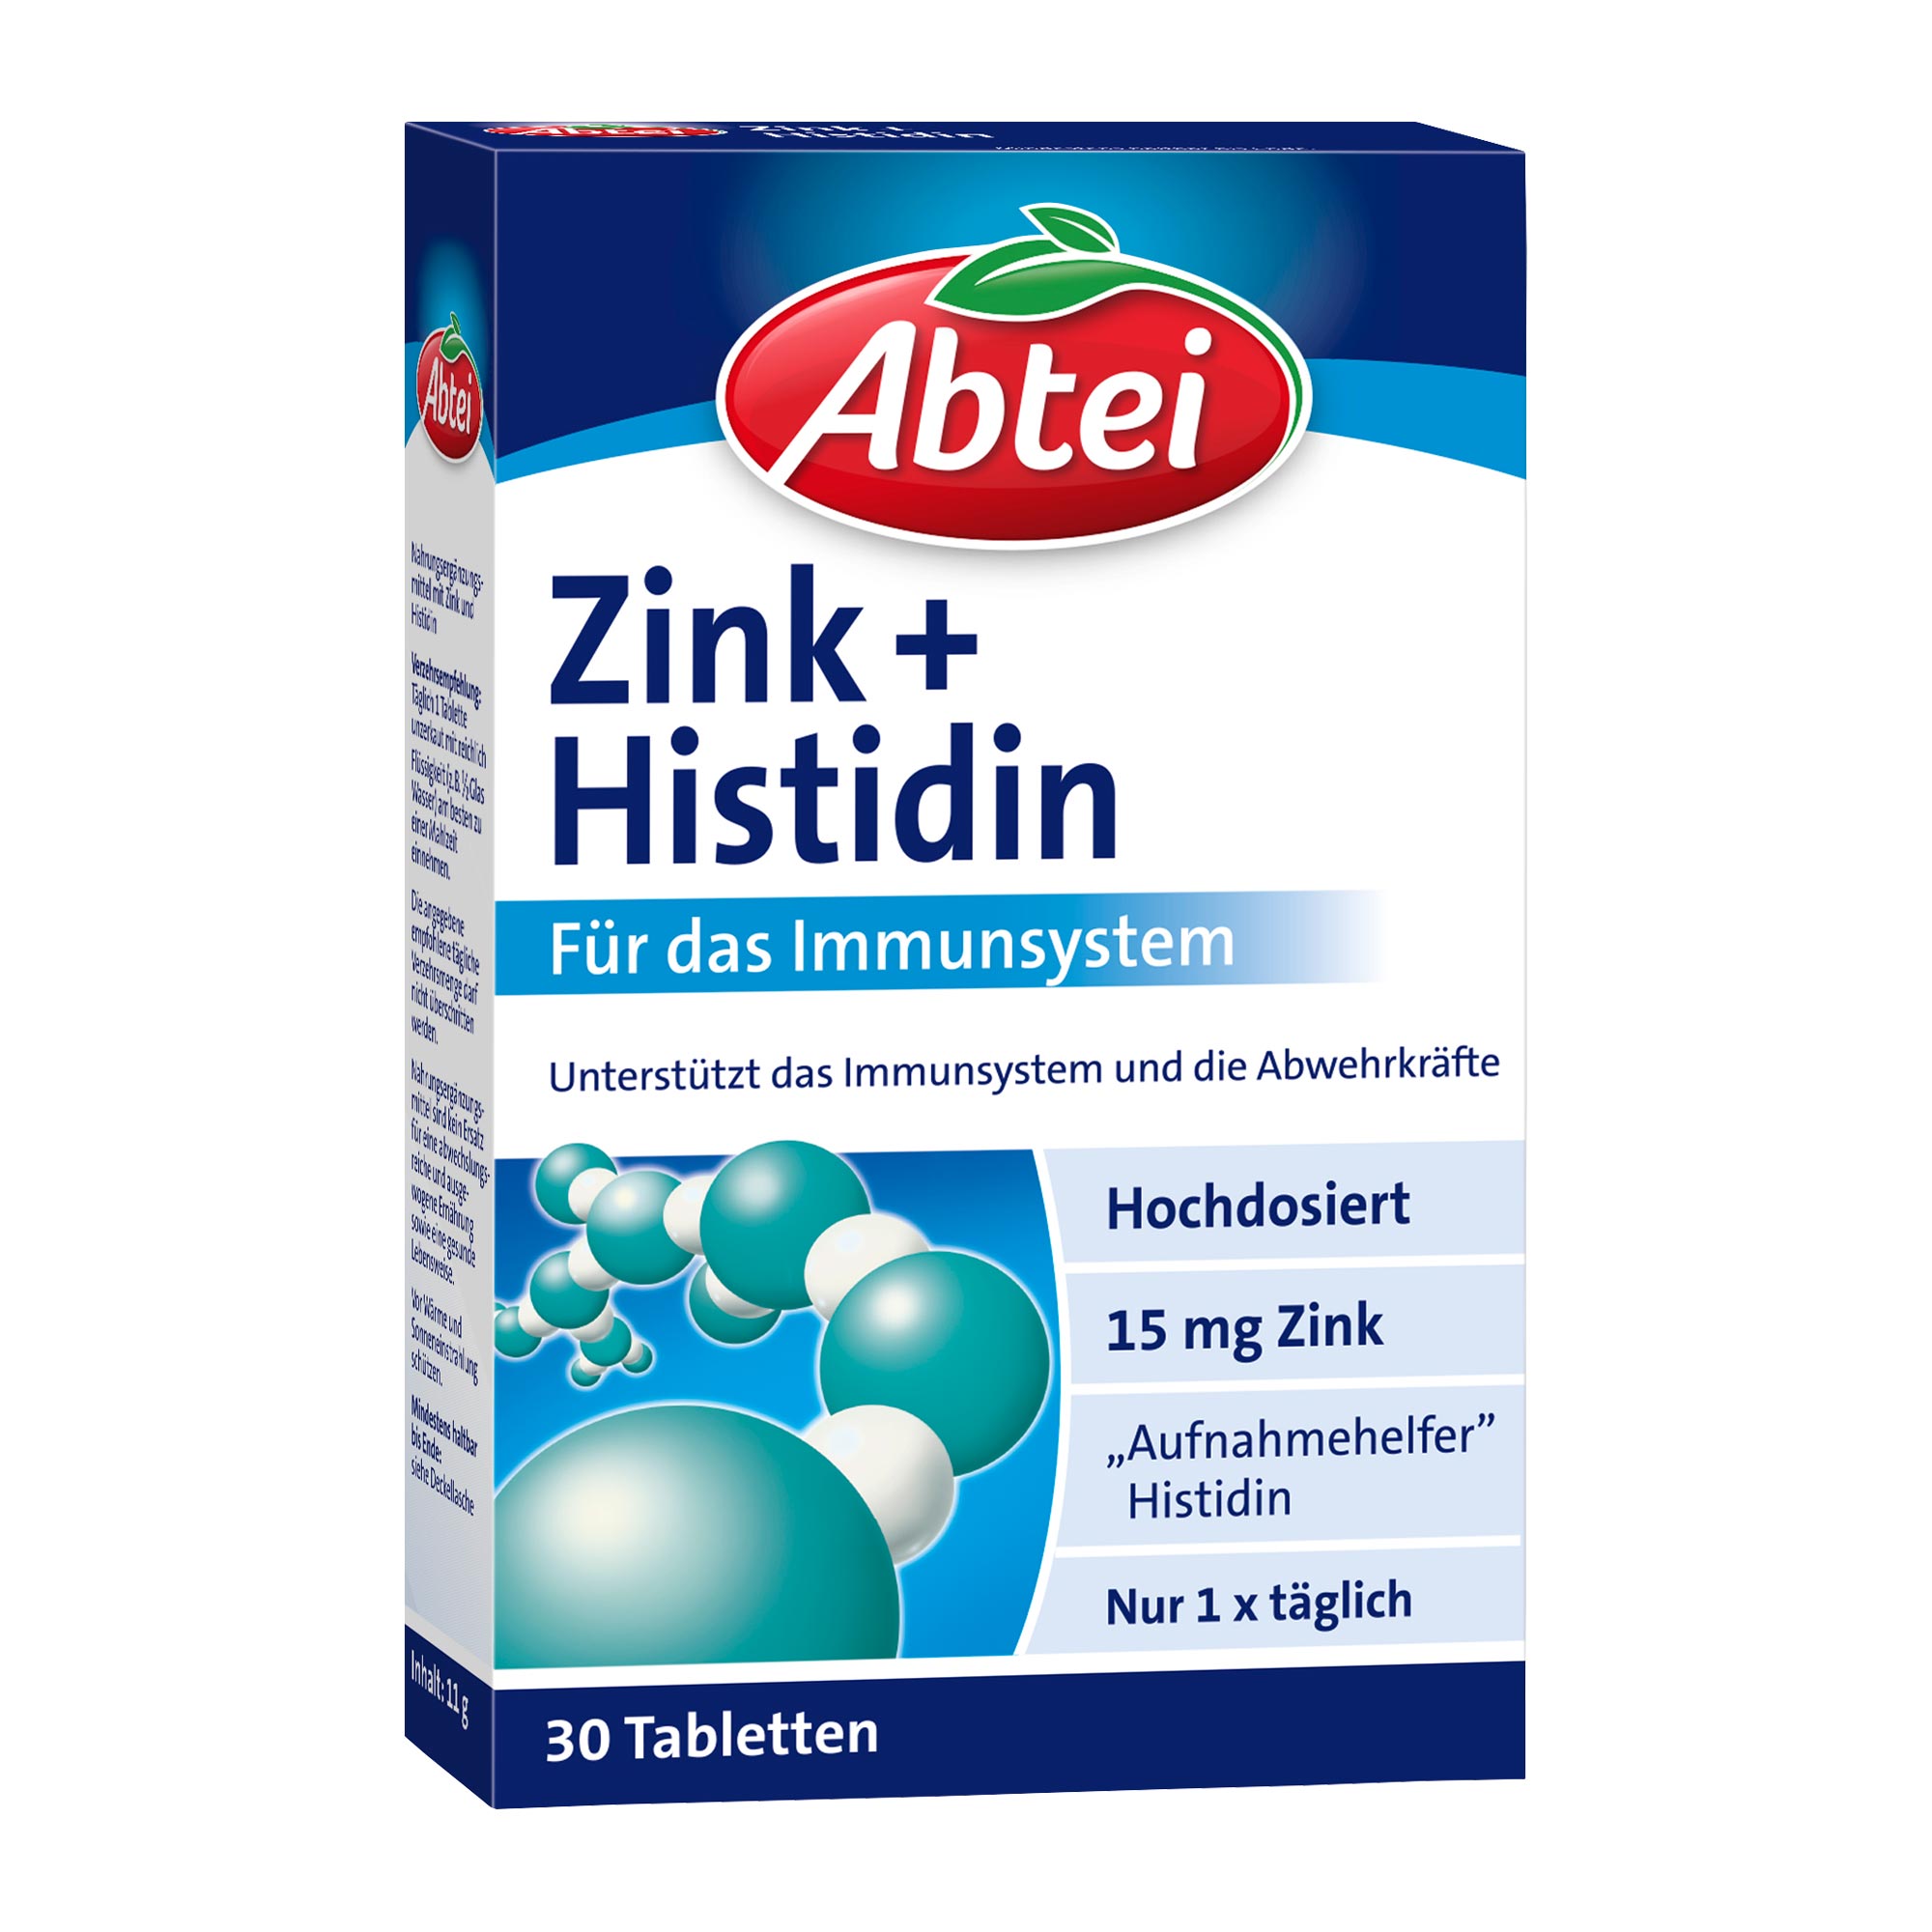 Nahrungsergänzungsmittel mit Zink und Histidin.